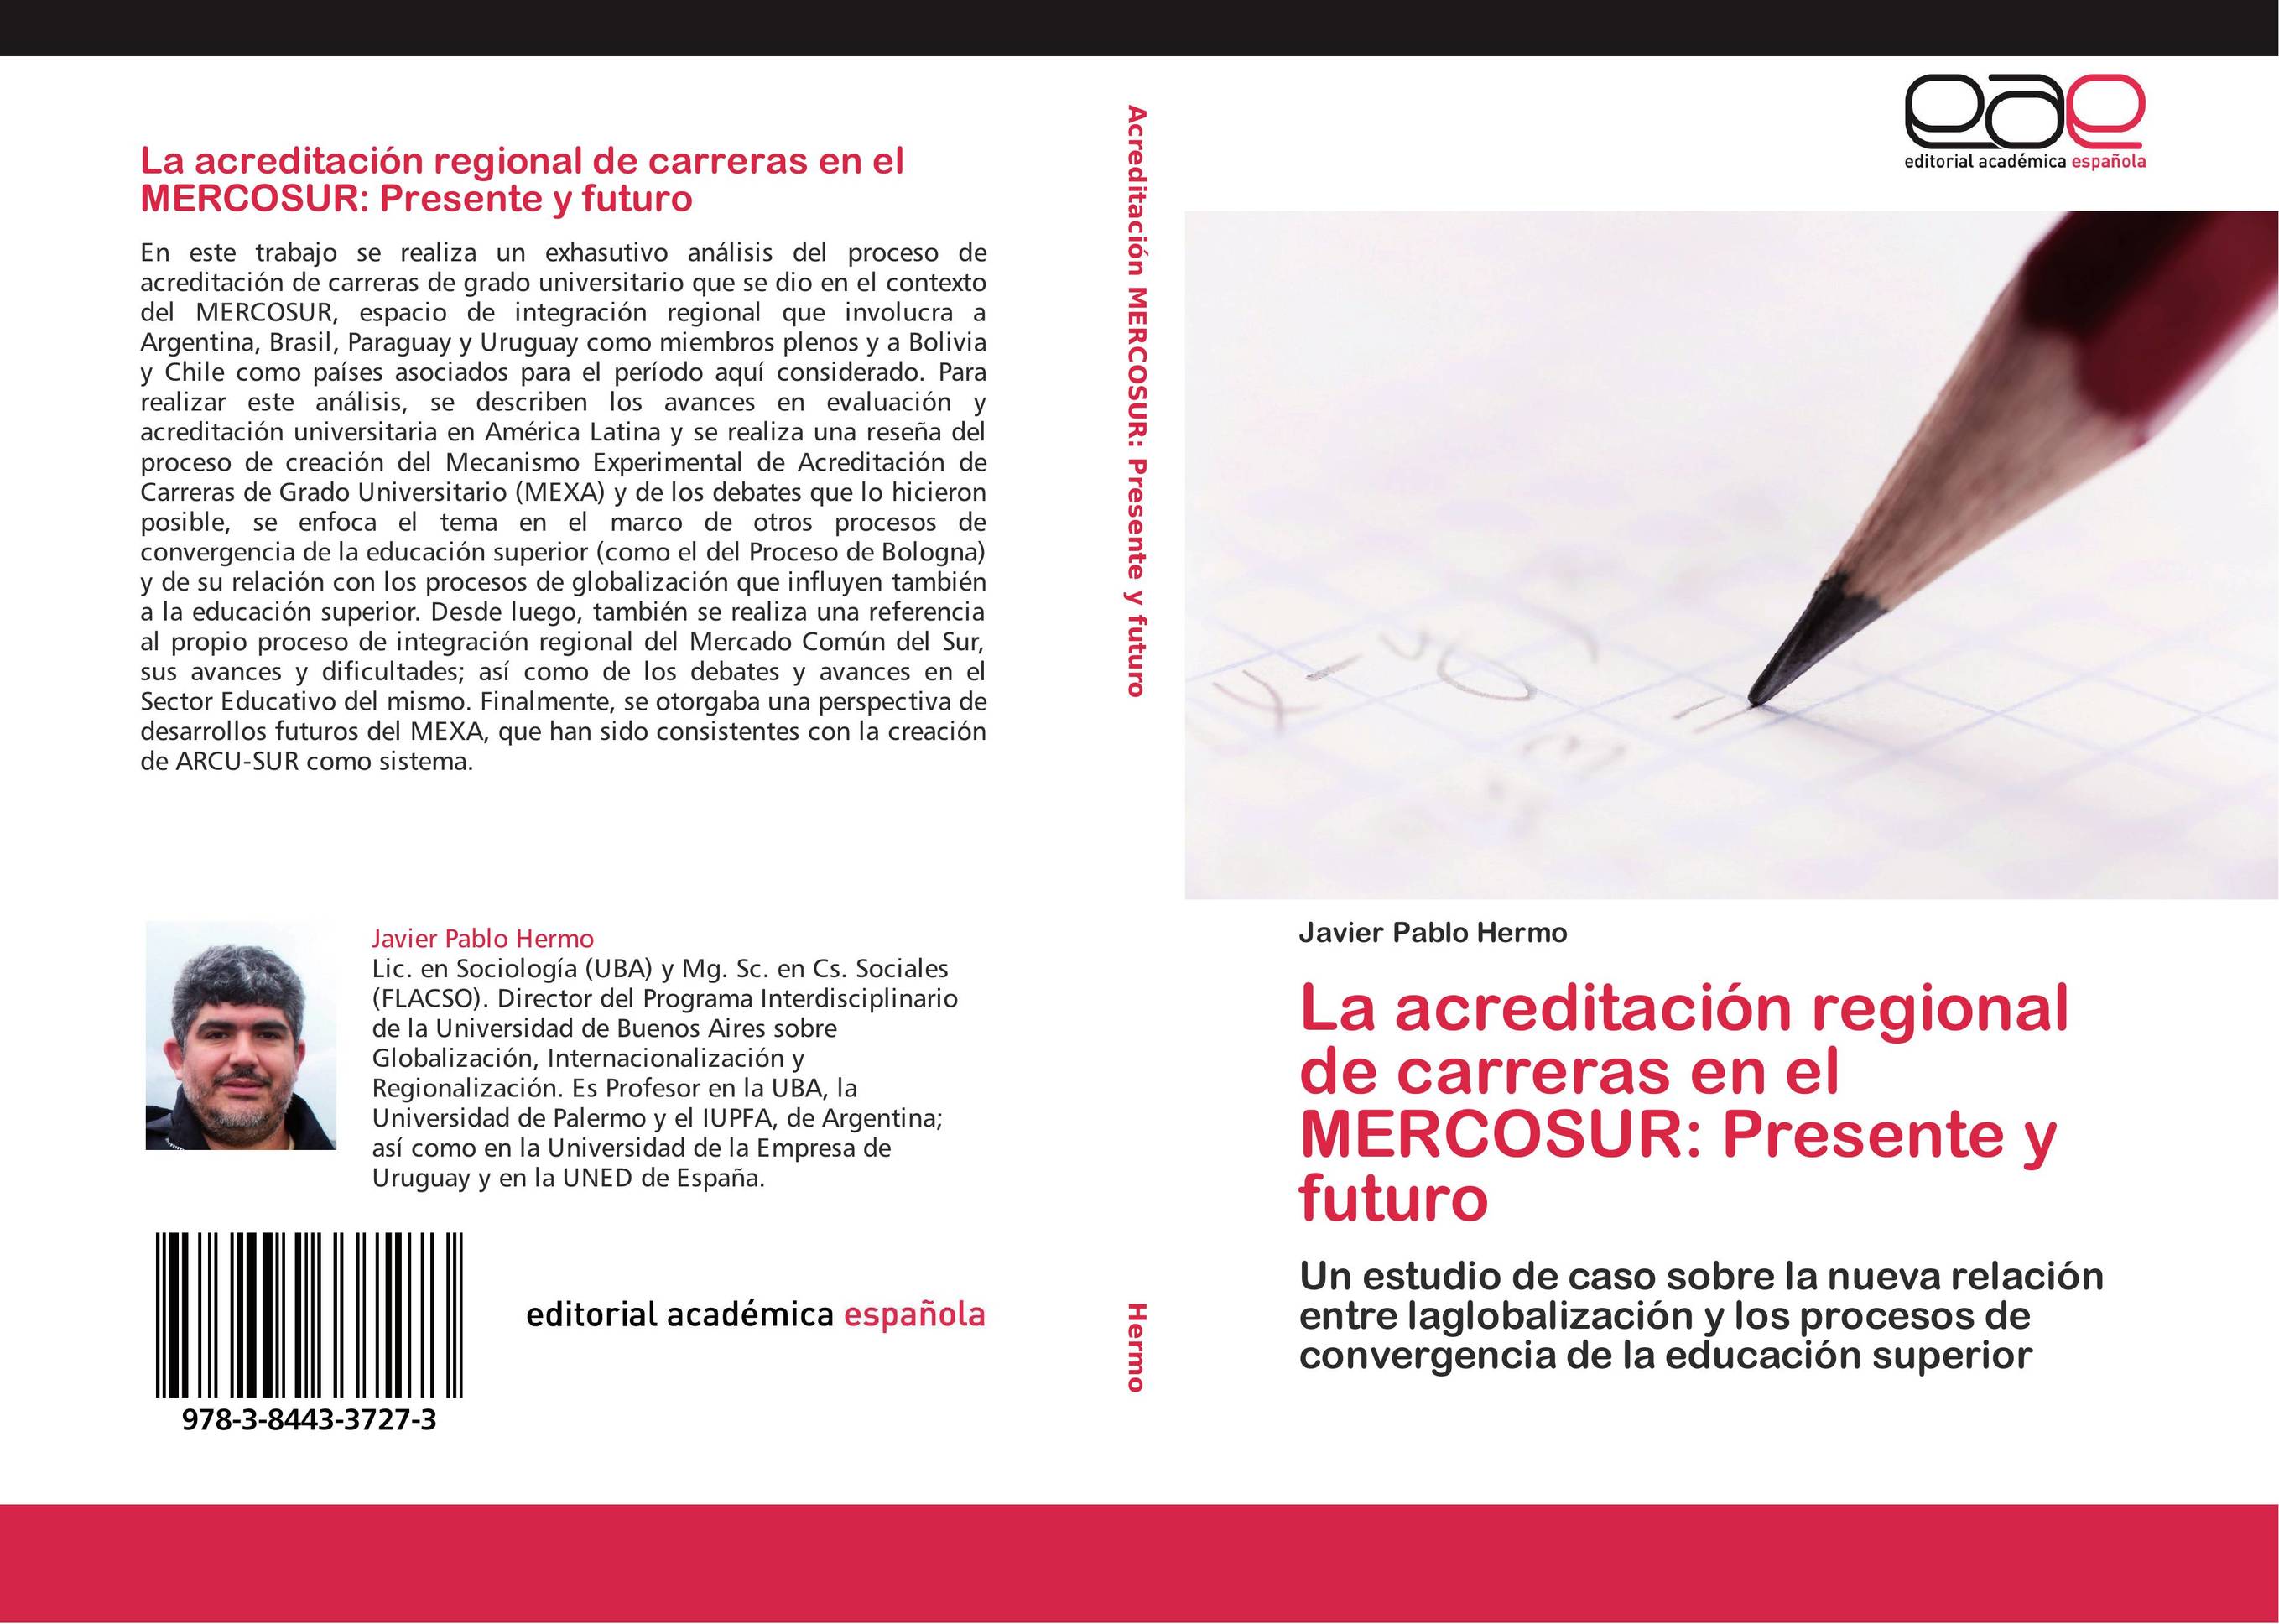 La acreditación regional de carreras en el MERCOSUR: Presente y futuro